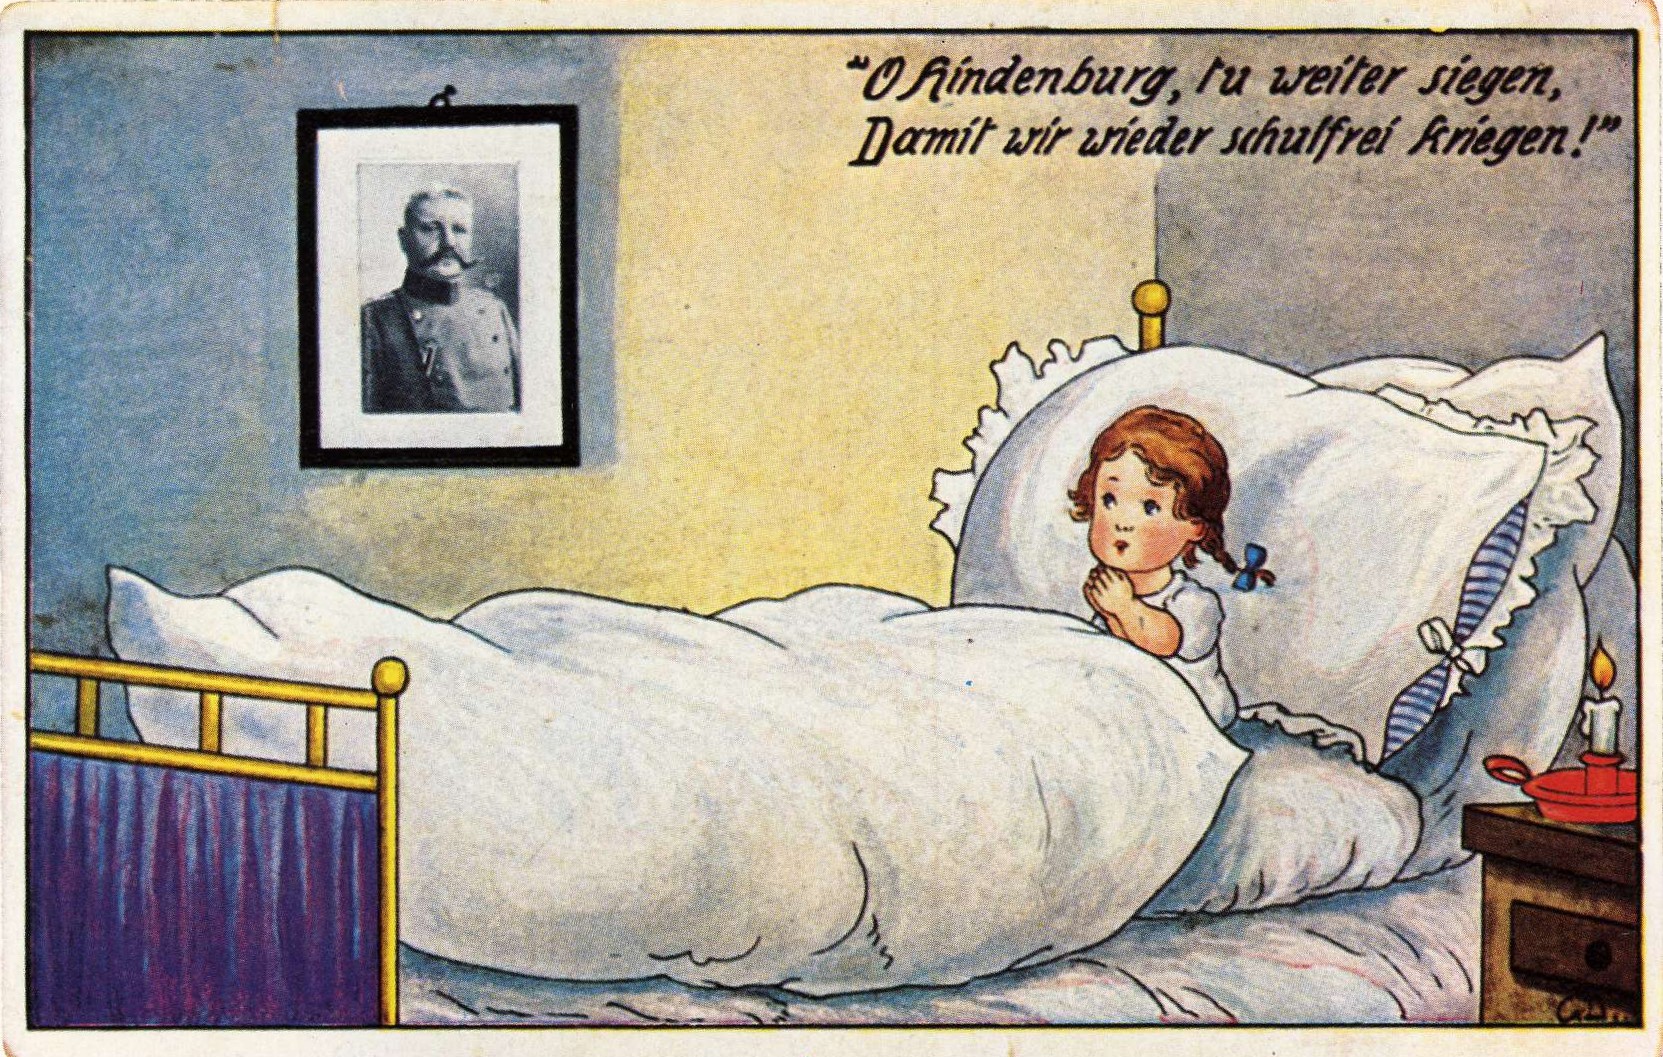 Kriegspropanda-Postkarte um 1914 „O Hindenburg, tu weiter siegen, damit wir wieder schulfrei kriegen!“